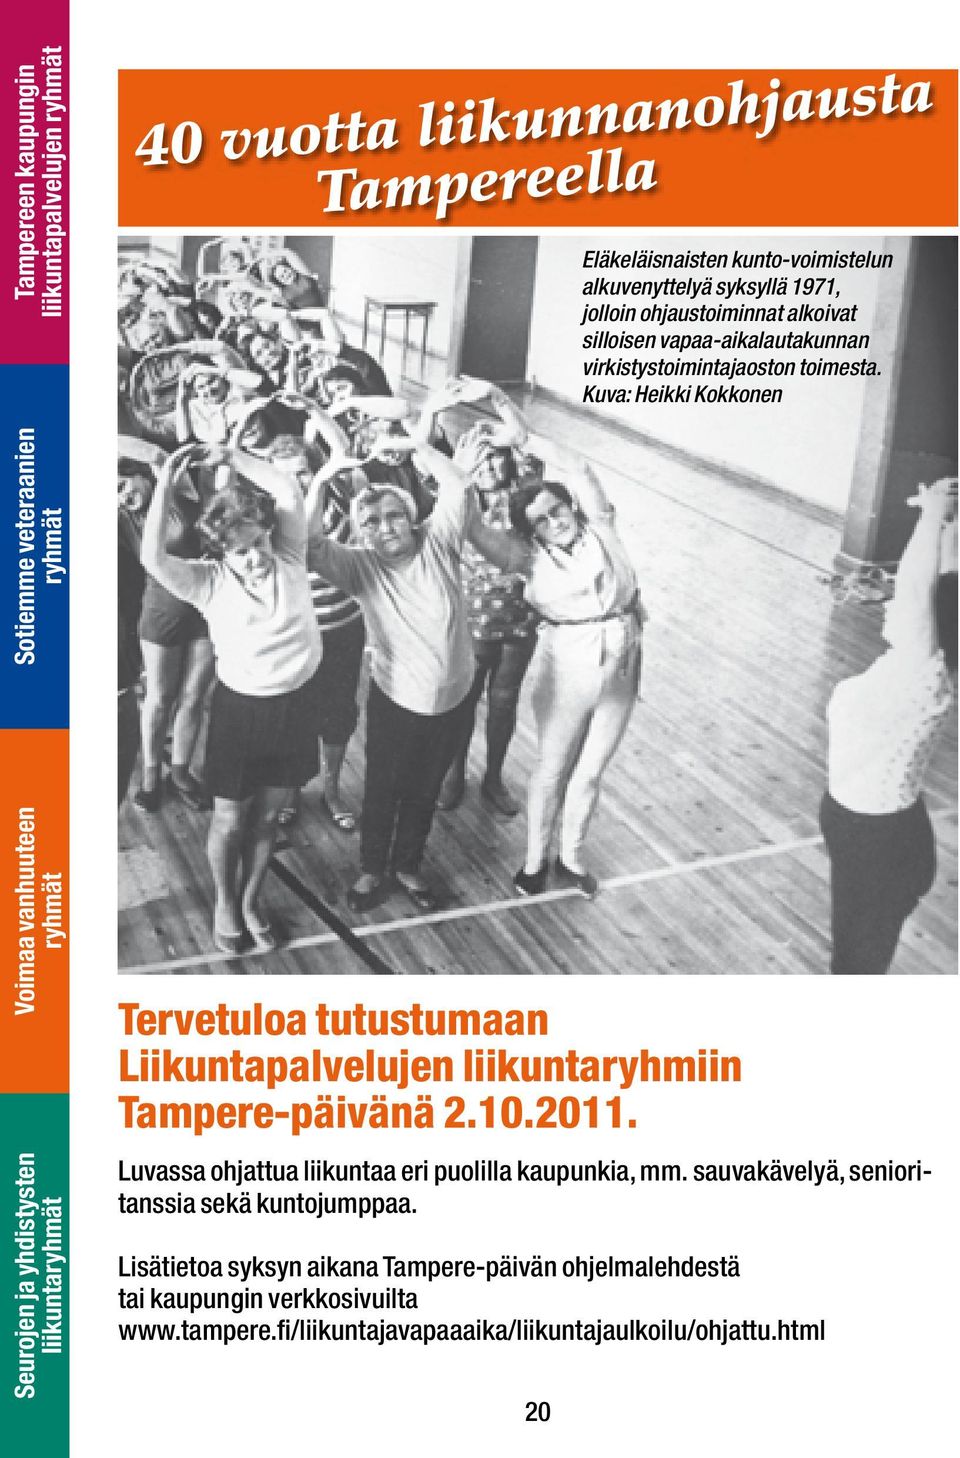 Kuva: Heikki Kokkonen liikunta Tervetuloa tutustumaan Liikuntapalvelujen liikuntaryhmiin Tampere-päivänä 2.10.2011.